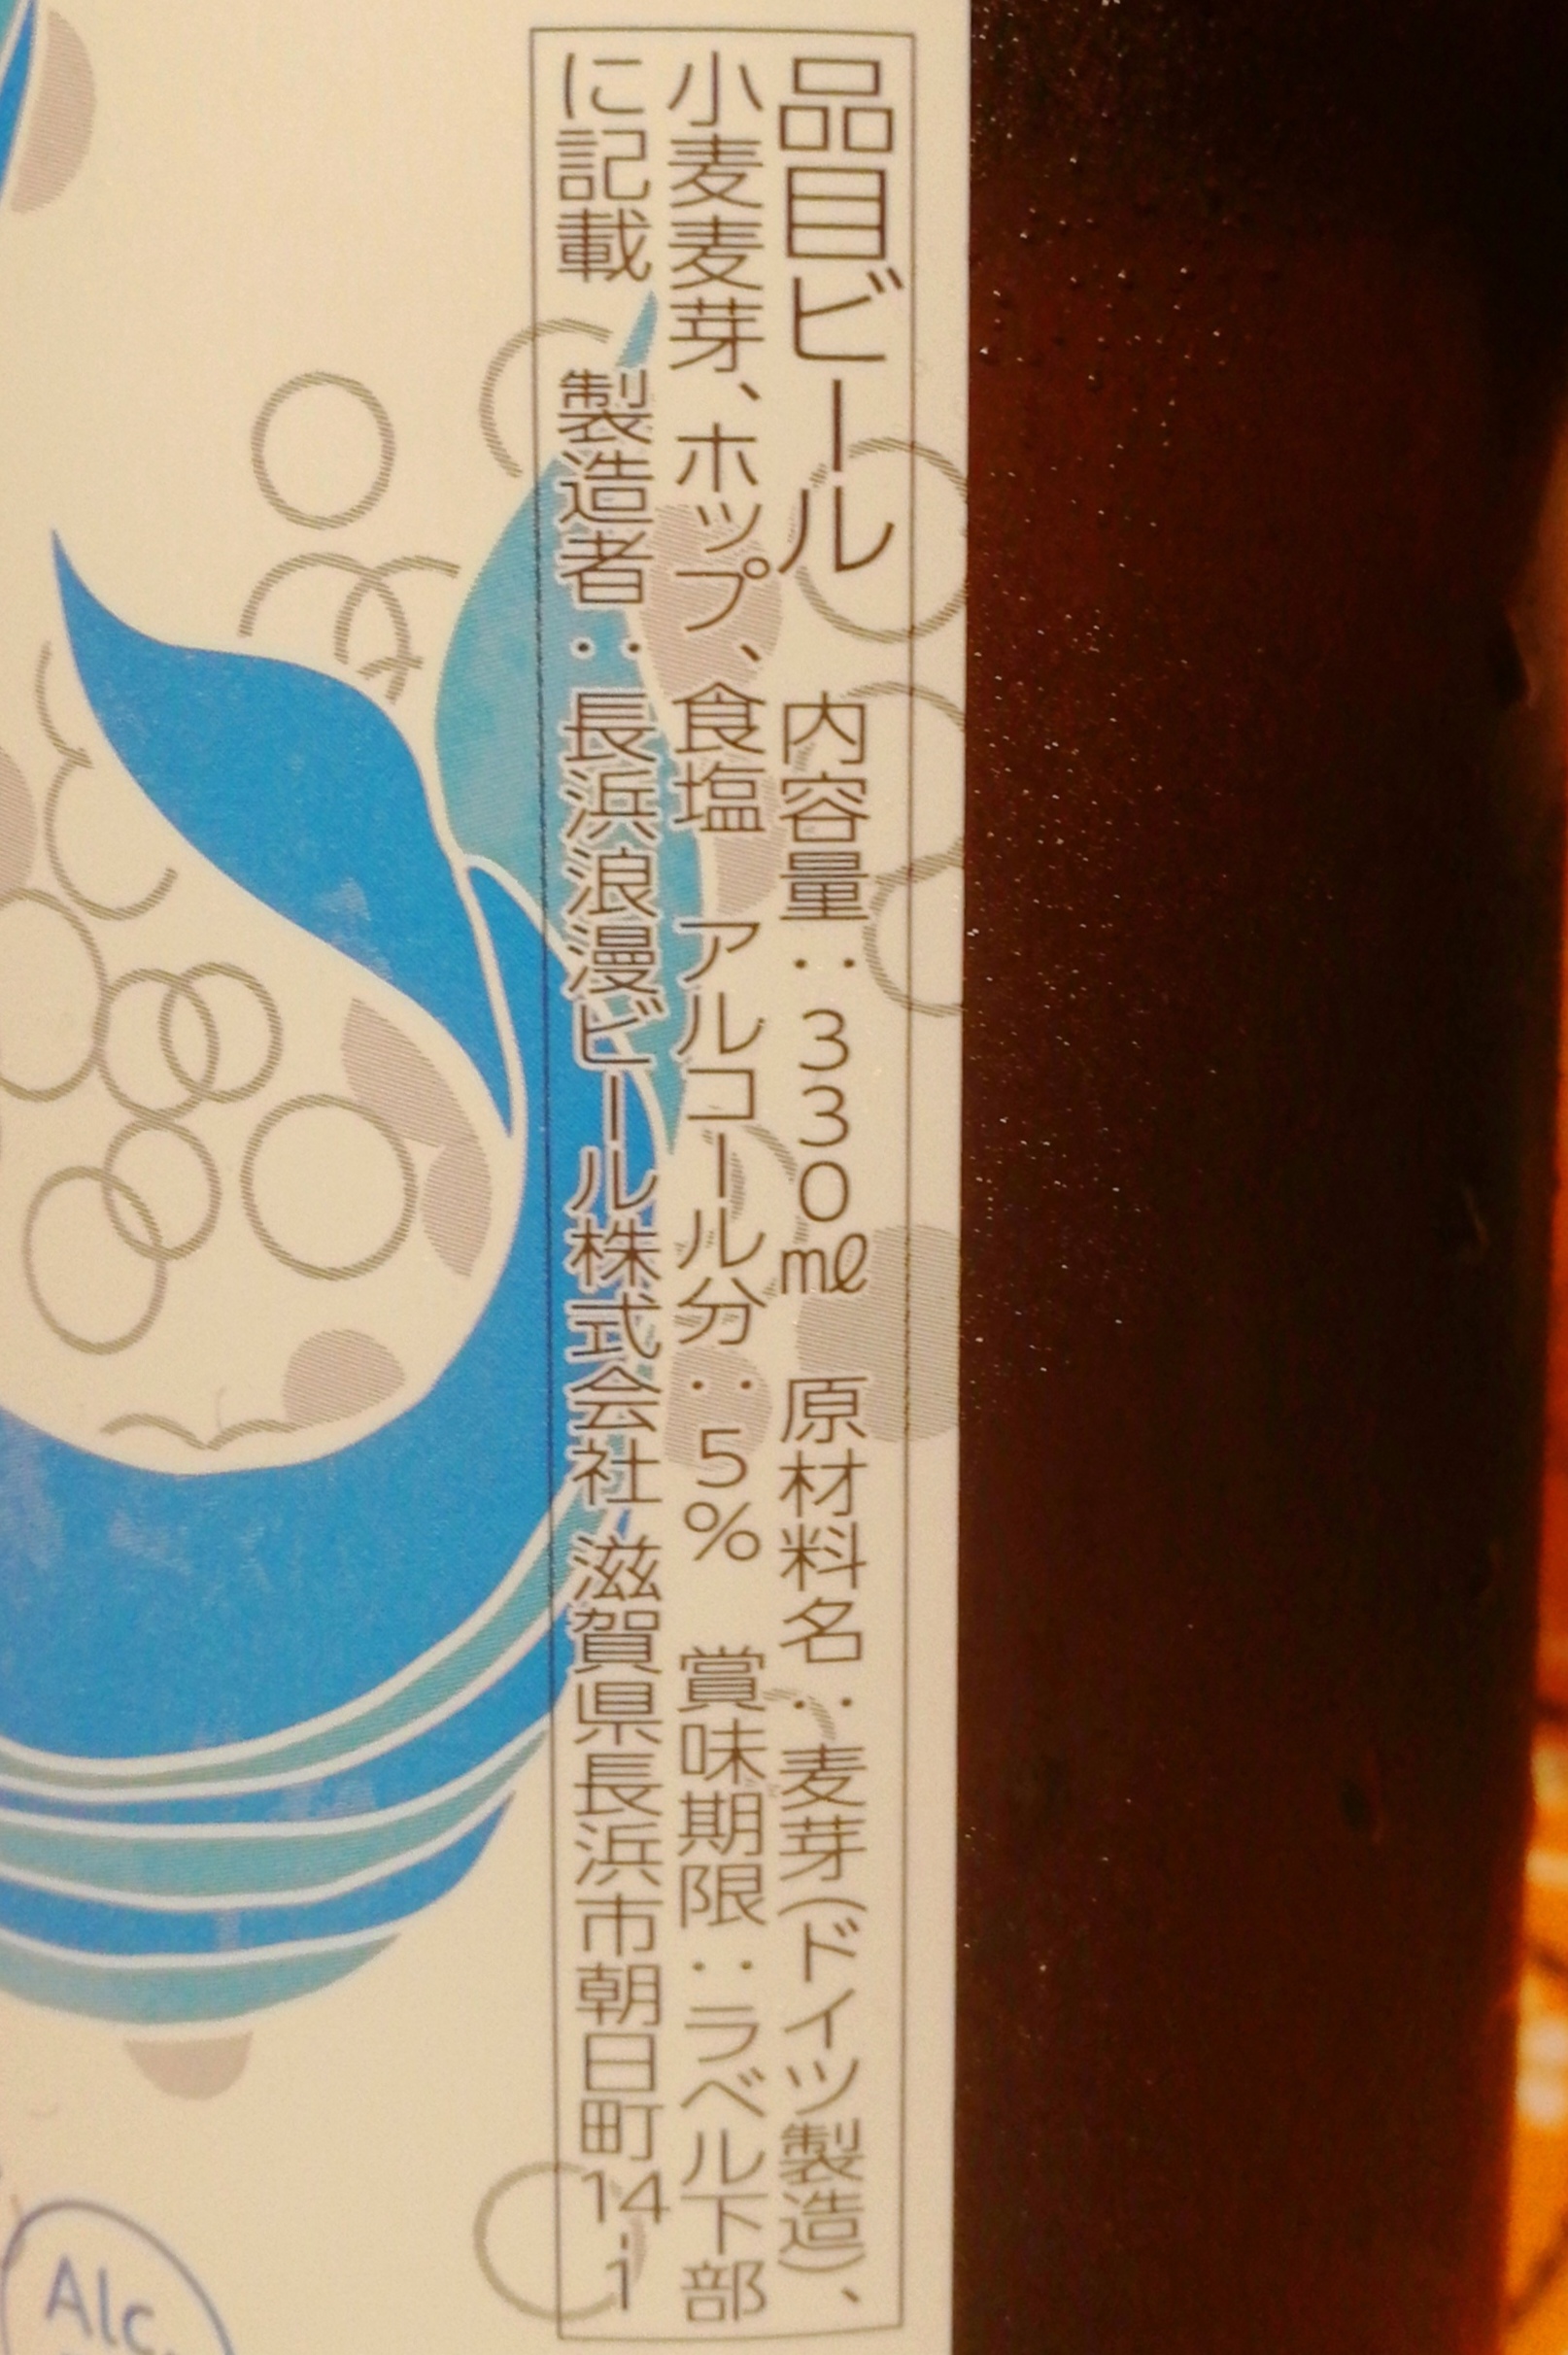 滋賀,長濱浪漫ビール,長濱ゴーゼビール